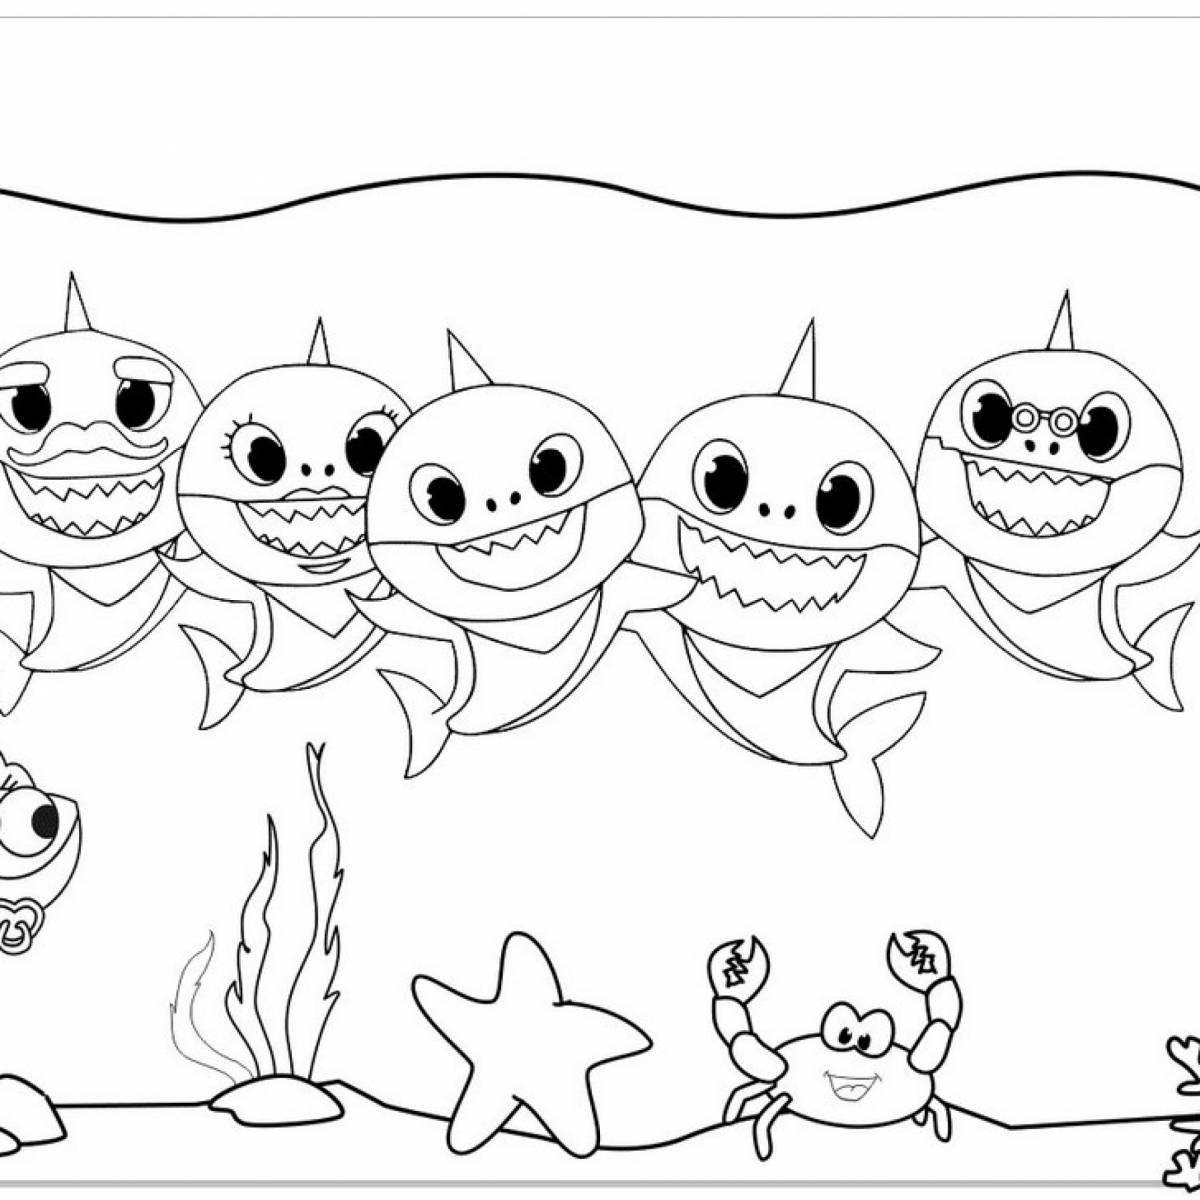 Яркая раскраска для детей-акул